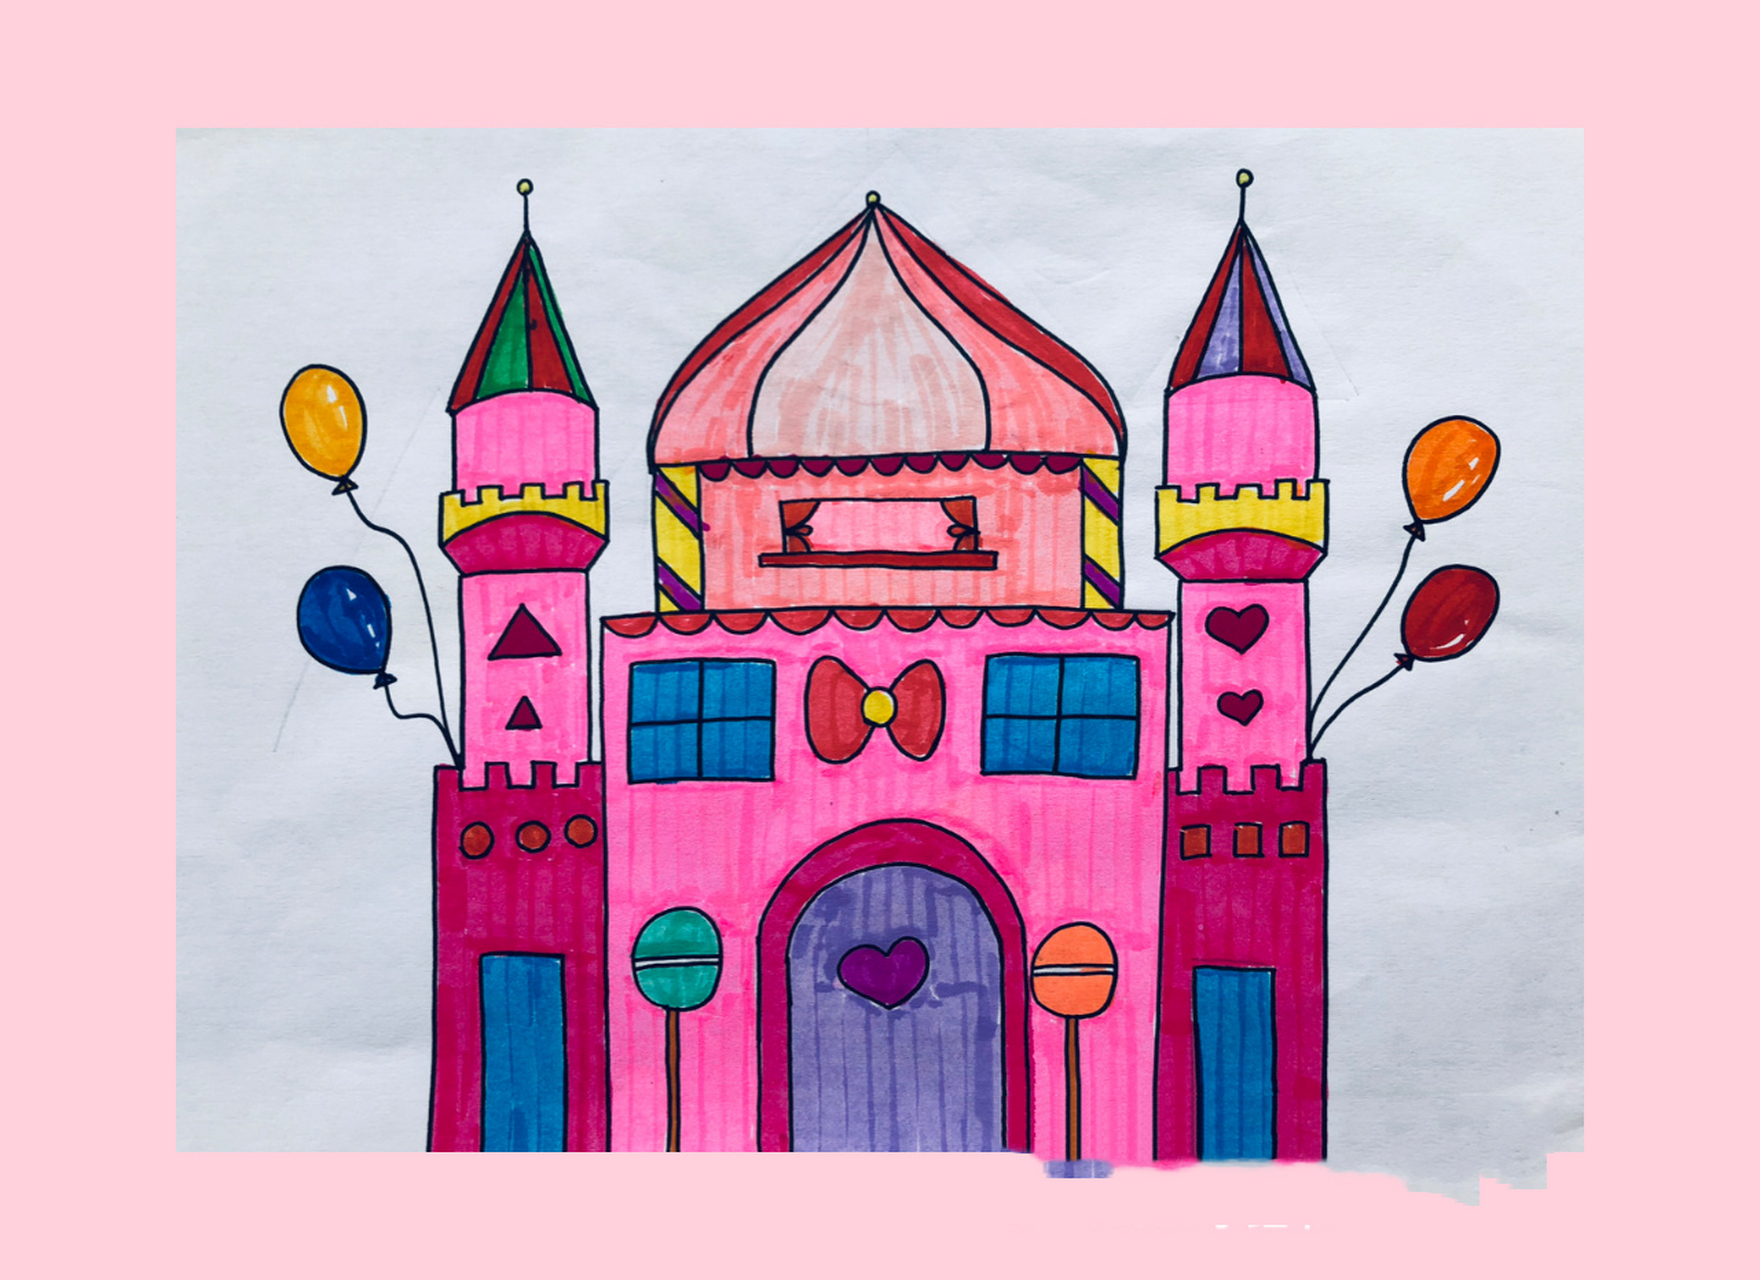 城堡房子简笔画加颜色图片